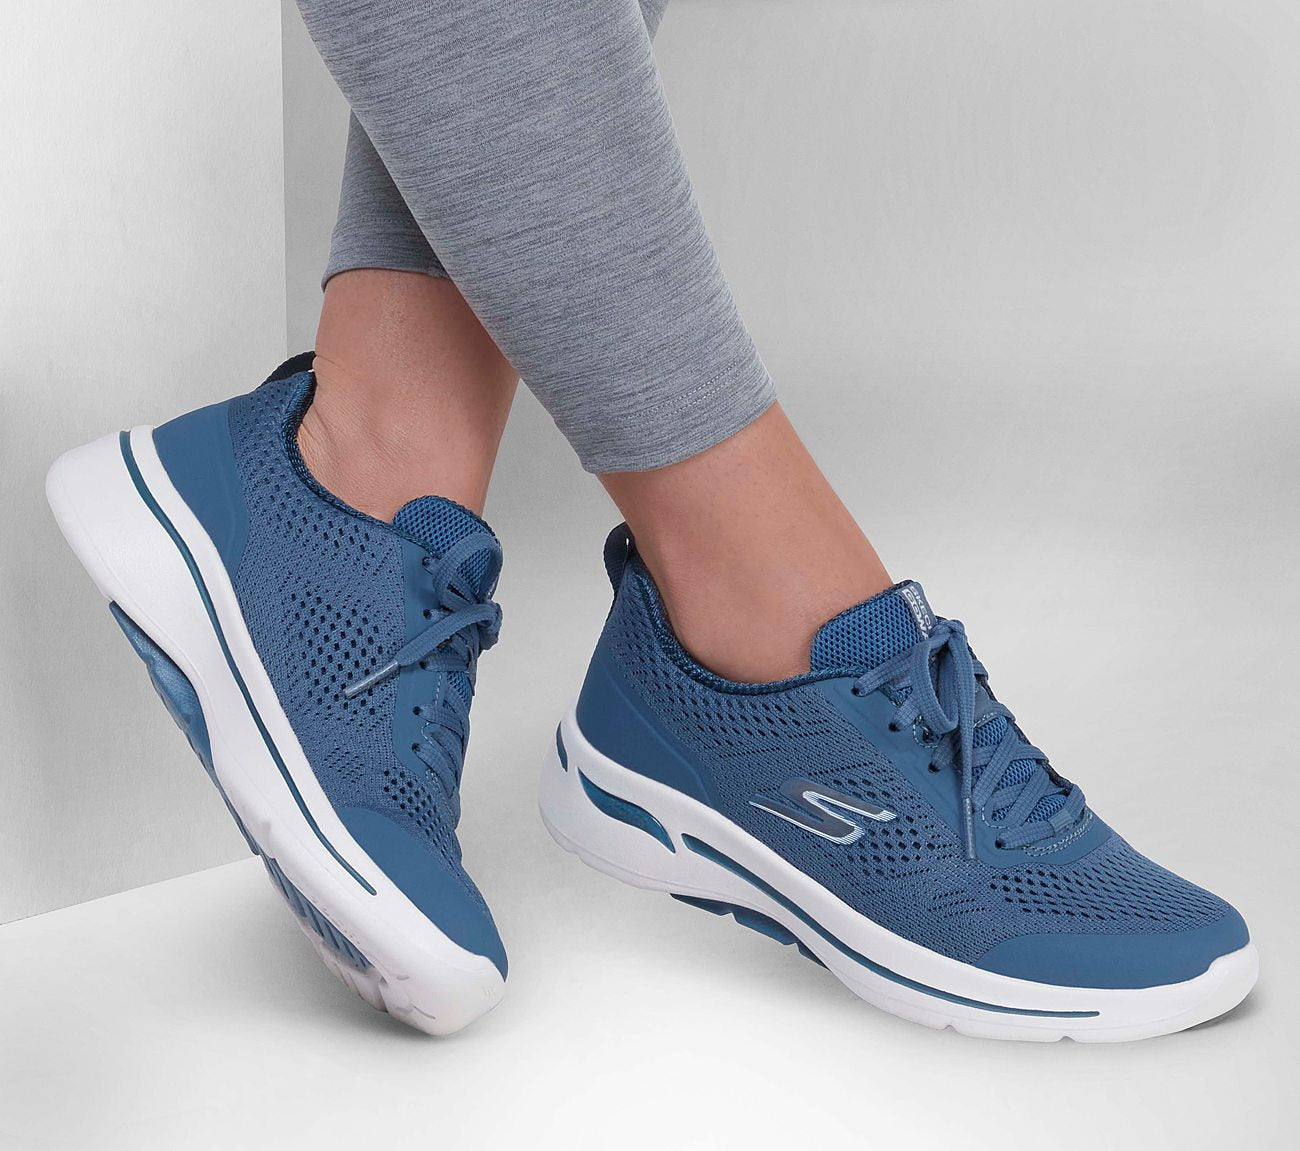 GO WALK Arch Fit - Motion Breeze Shoe Skechers